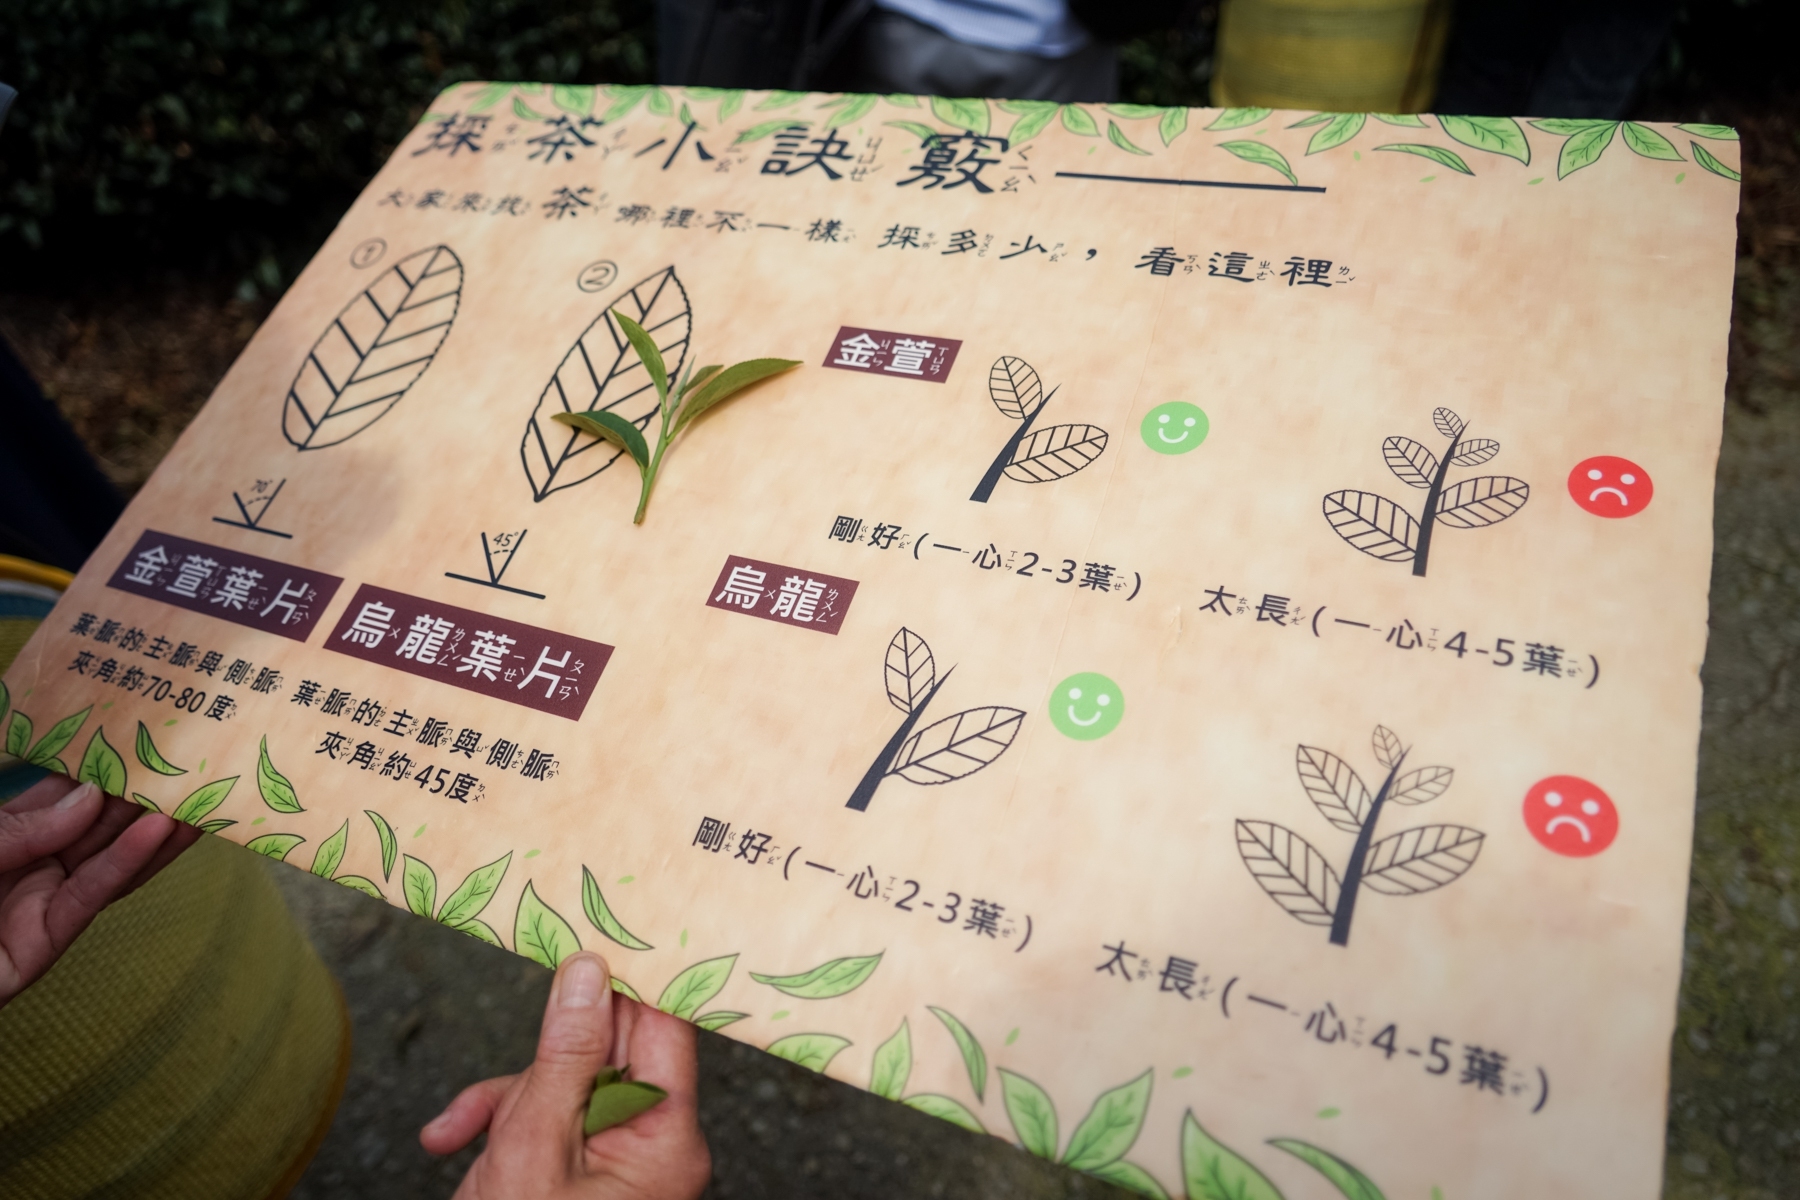 嘉義小旅行。瑞峰社區 瑞峰茶覺之旅 採茶 揉茶體驗、1314 觀景台 漫步瑞峰、茶席文化